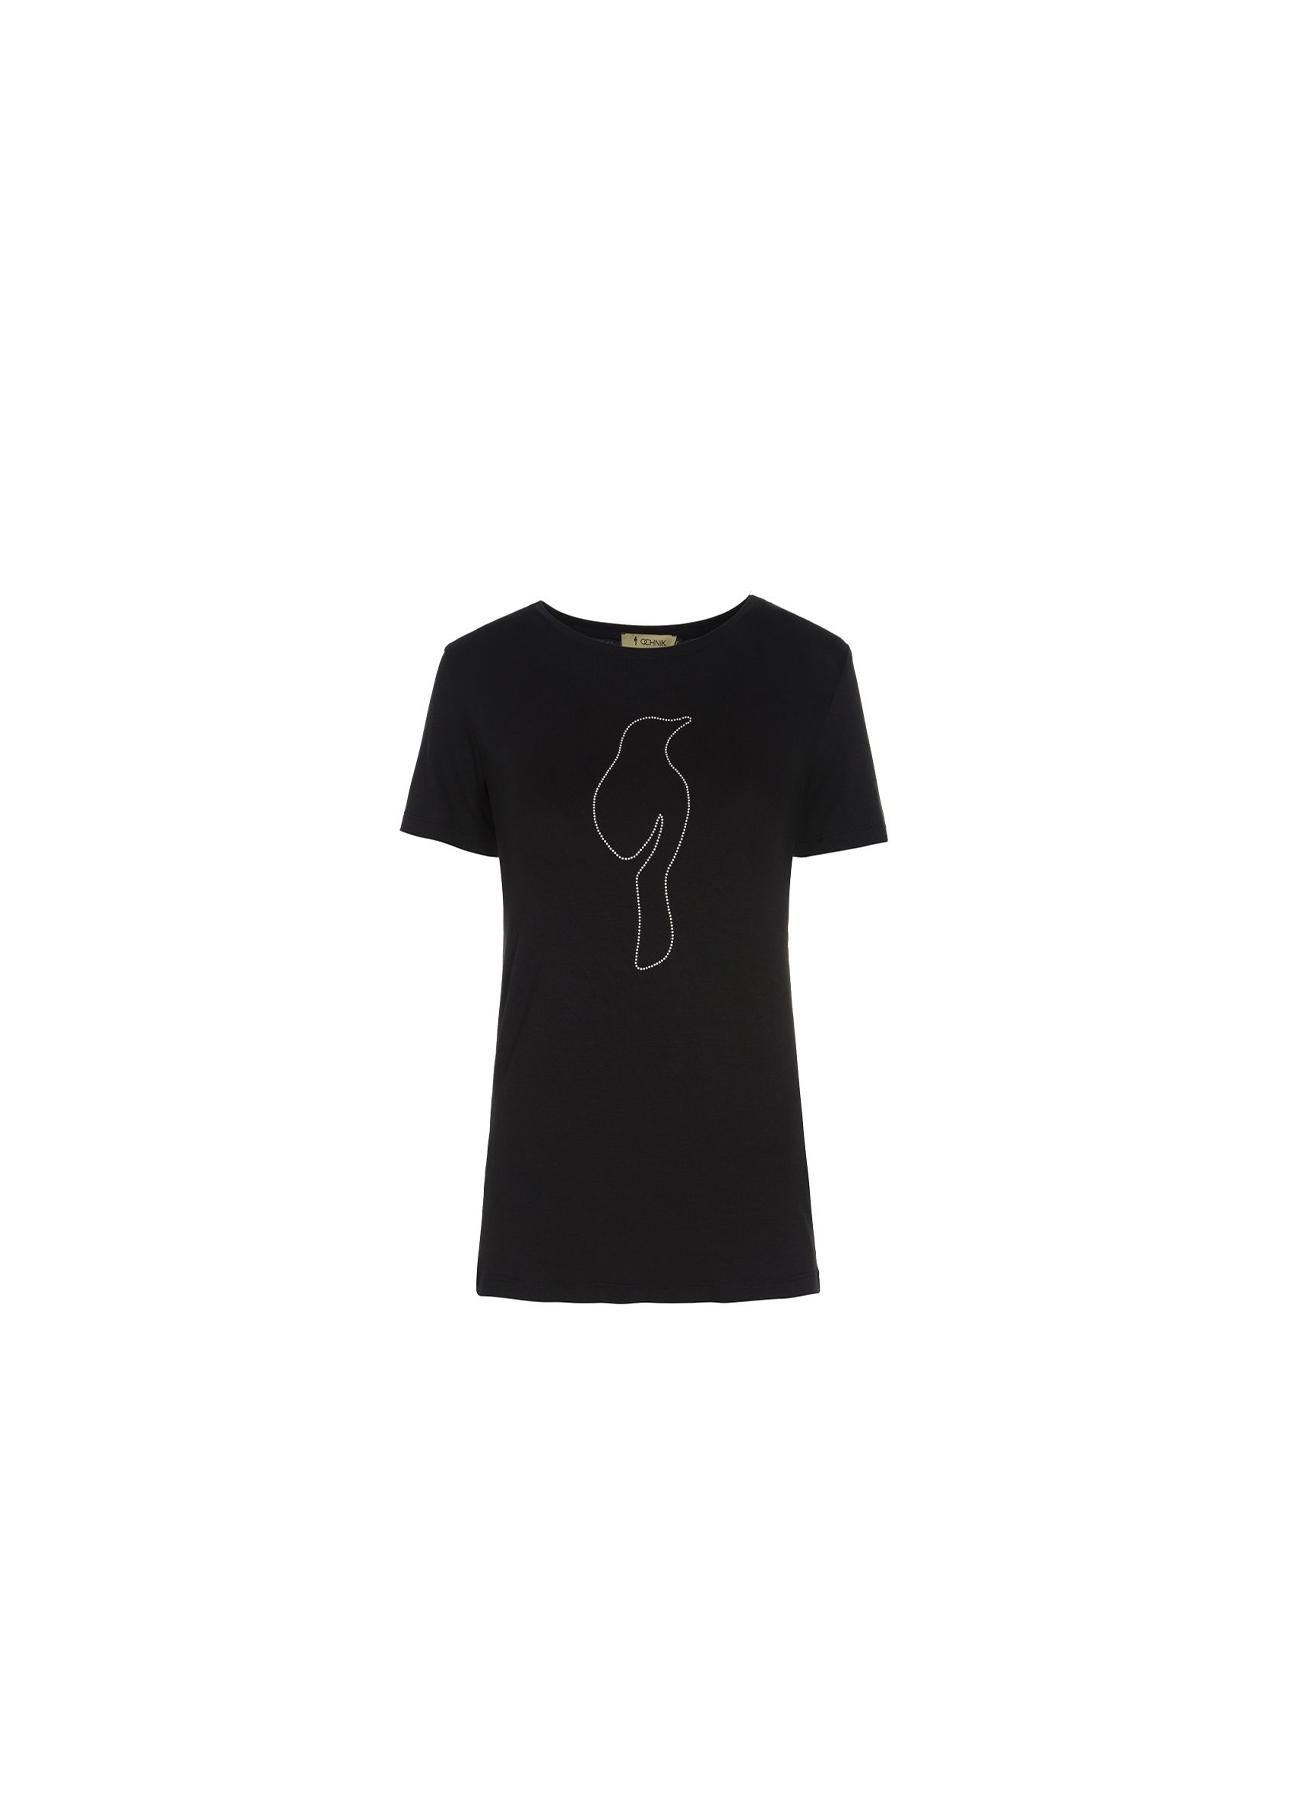 Czarny T-shirt damski z aplikacją TSHDT-0038-99(W19)